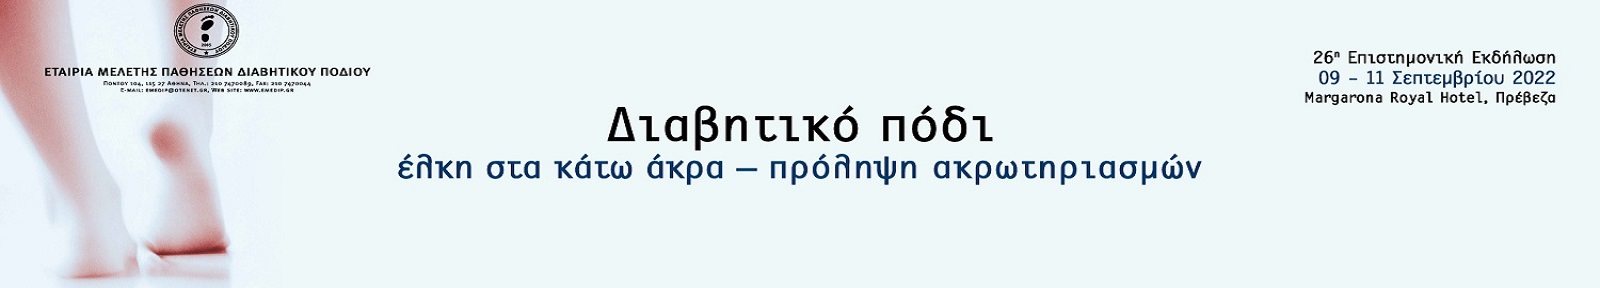 26η Επιστημονική Εκδήλωση της Ελληνικής Εταιρείας Μελέτης Παθήσεων Διαβητικού Ποδιού 